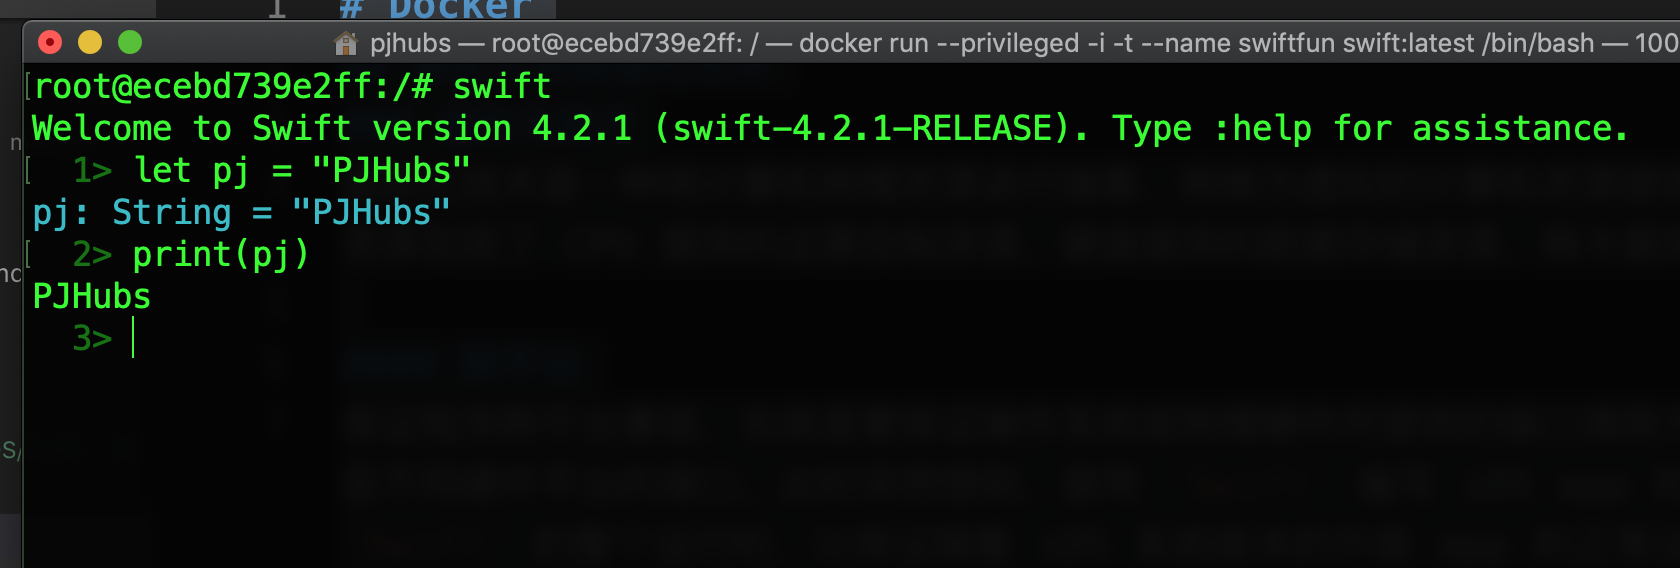 Swift-Docker.png